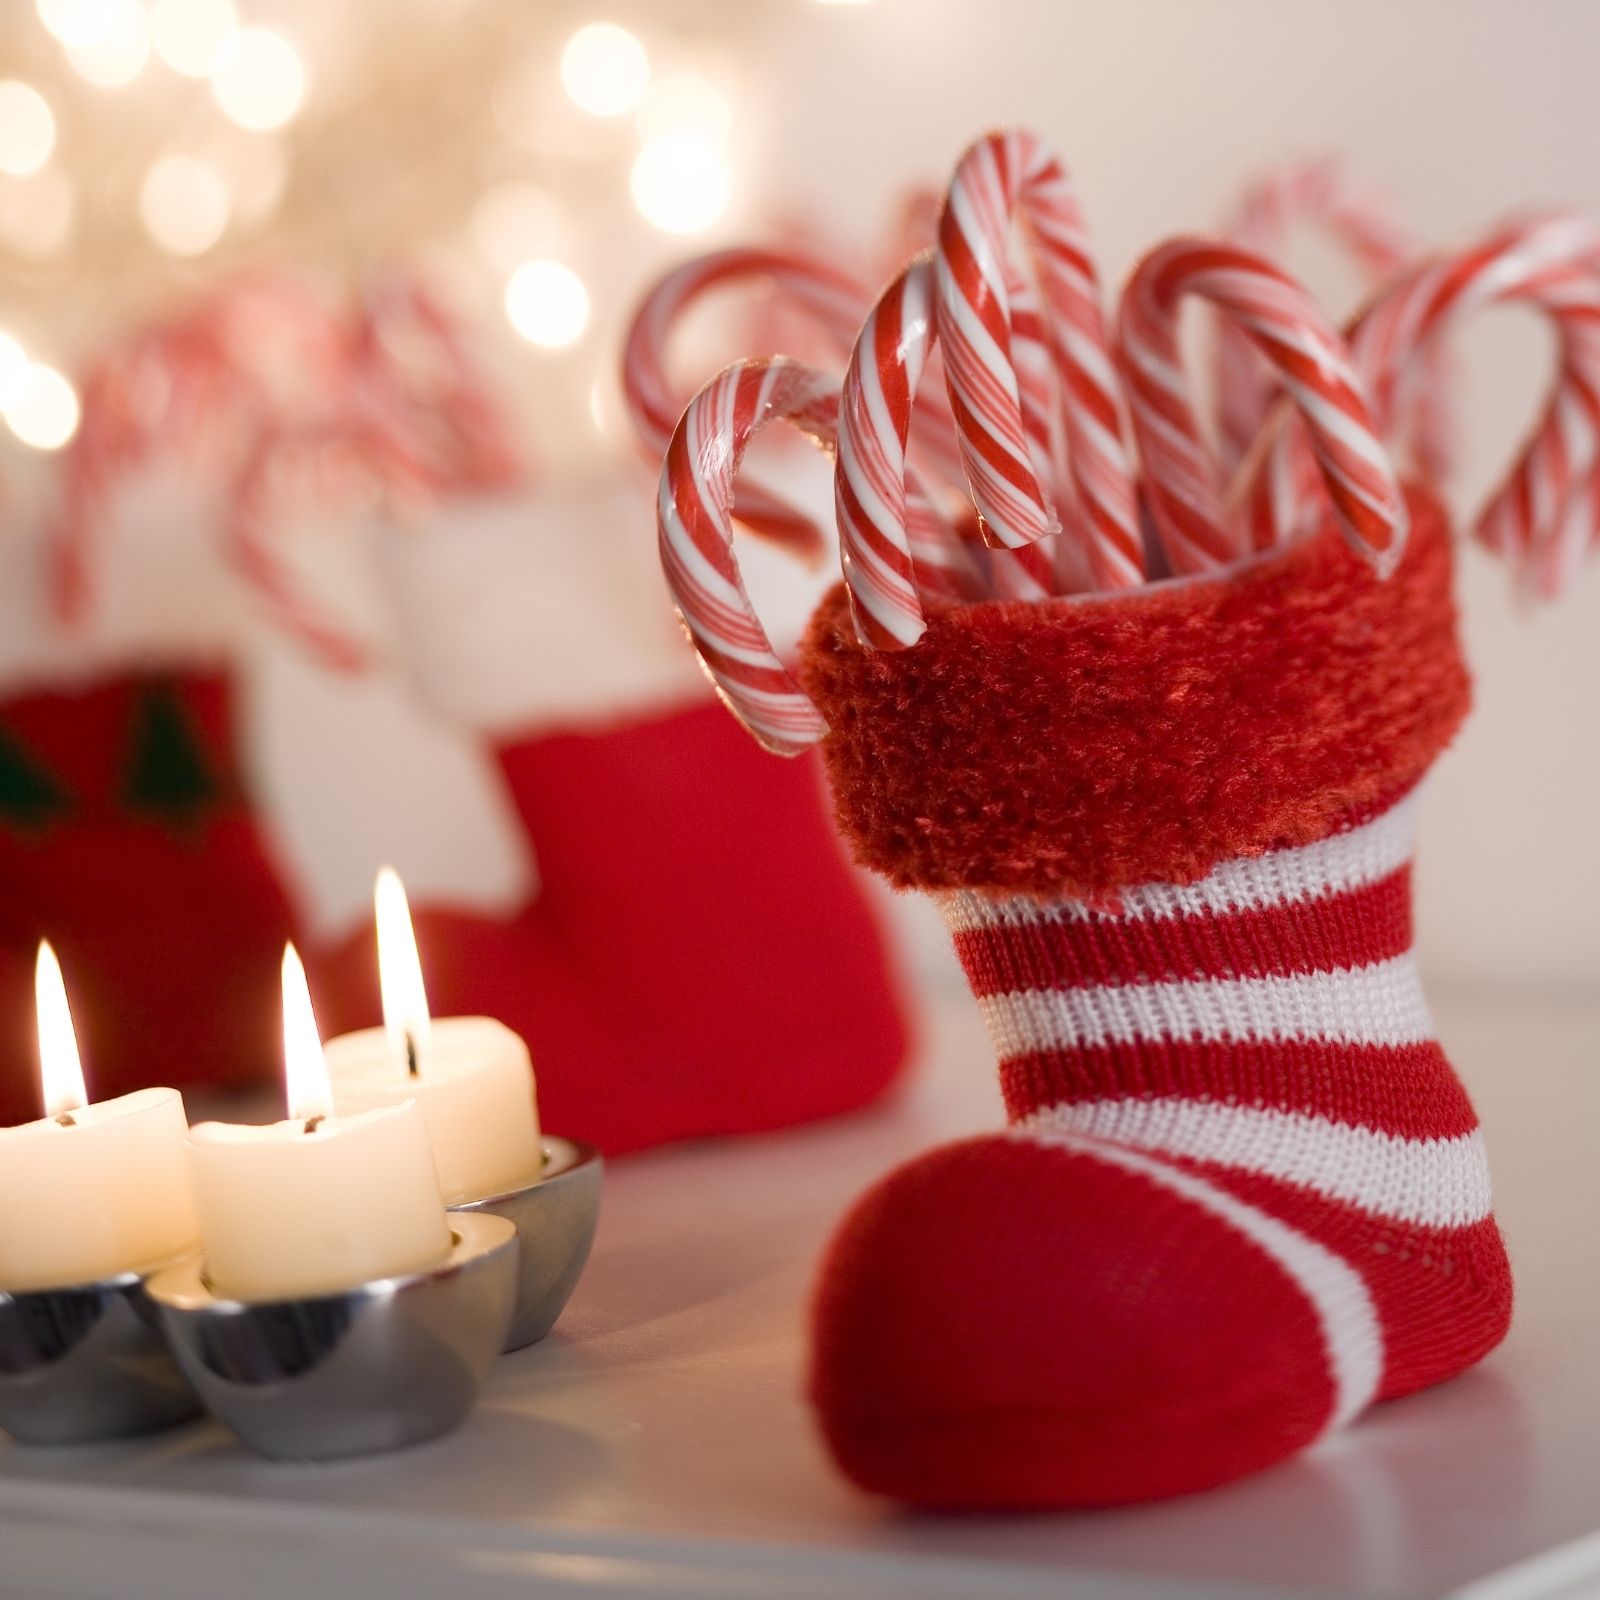  व्हाइट एंड रेड थीम (red and white theme) के आधार पर आप क्रिसमस डेकोरेशन कर सकते हैं. इसके लिए आप इस तरह का क्रिसमस कैंडी (red and candy), रेड एंड व्हाइट सॉक्‍स, लाल सफेद डेकोरेशन लाइट (Light), बॉल आदि का प्रयोग कर सकते हैं. Image : Canva